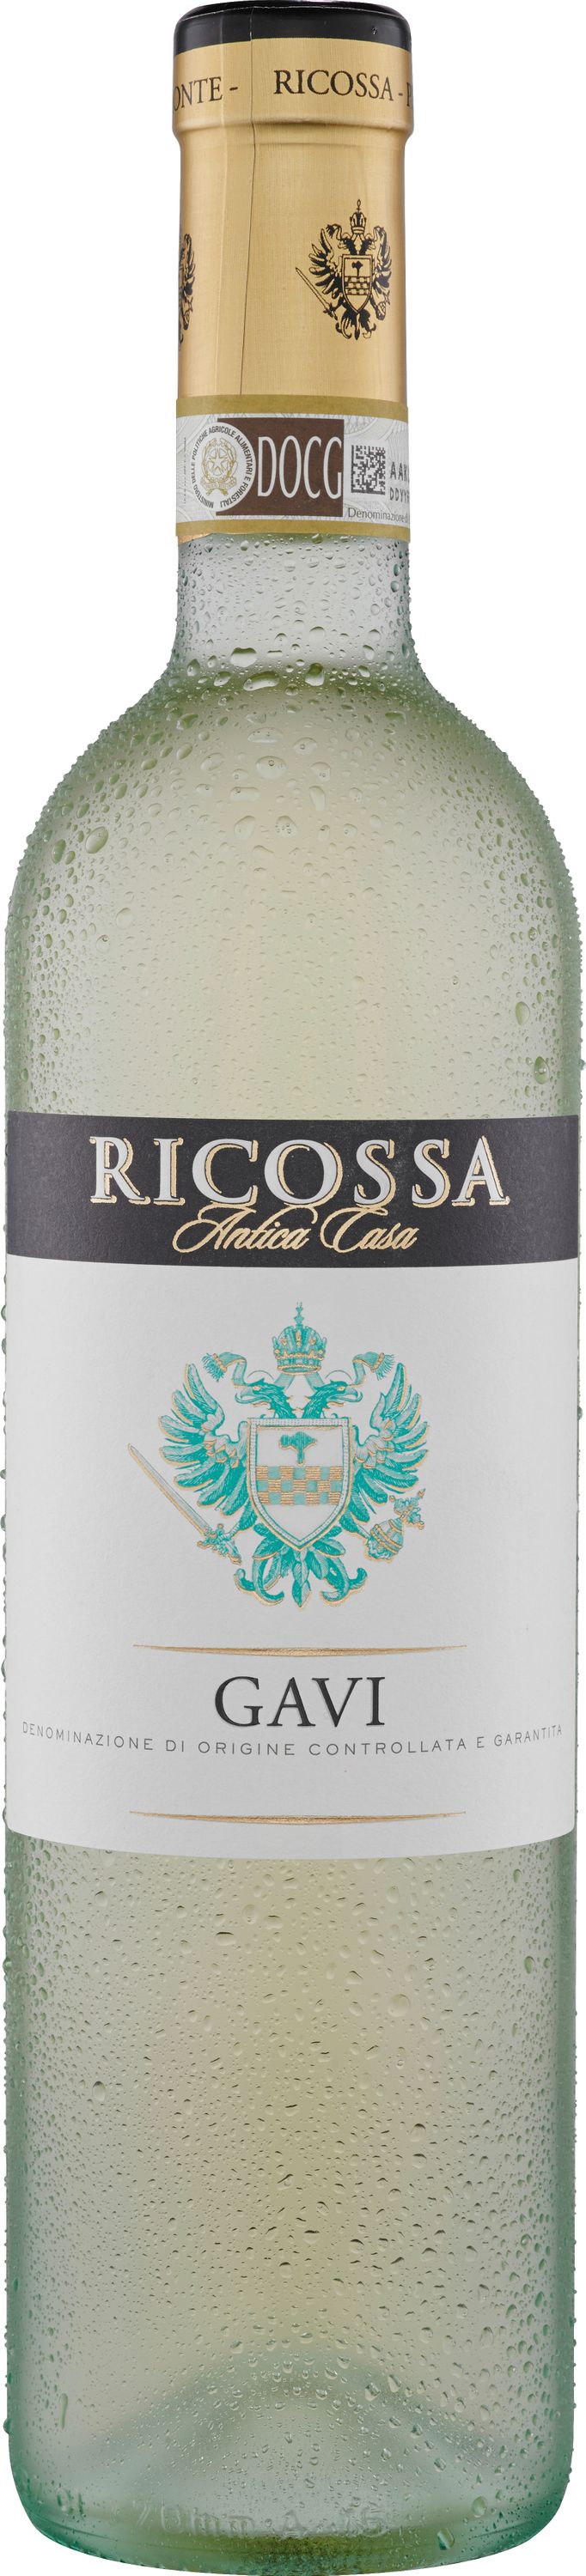 Ricossa Gavi DOCG trocken eleganter italienischer Weisswein 750ml 12%b Vol